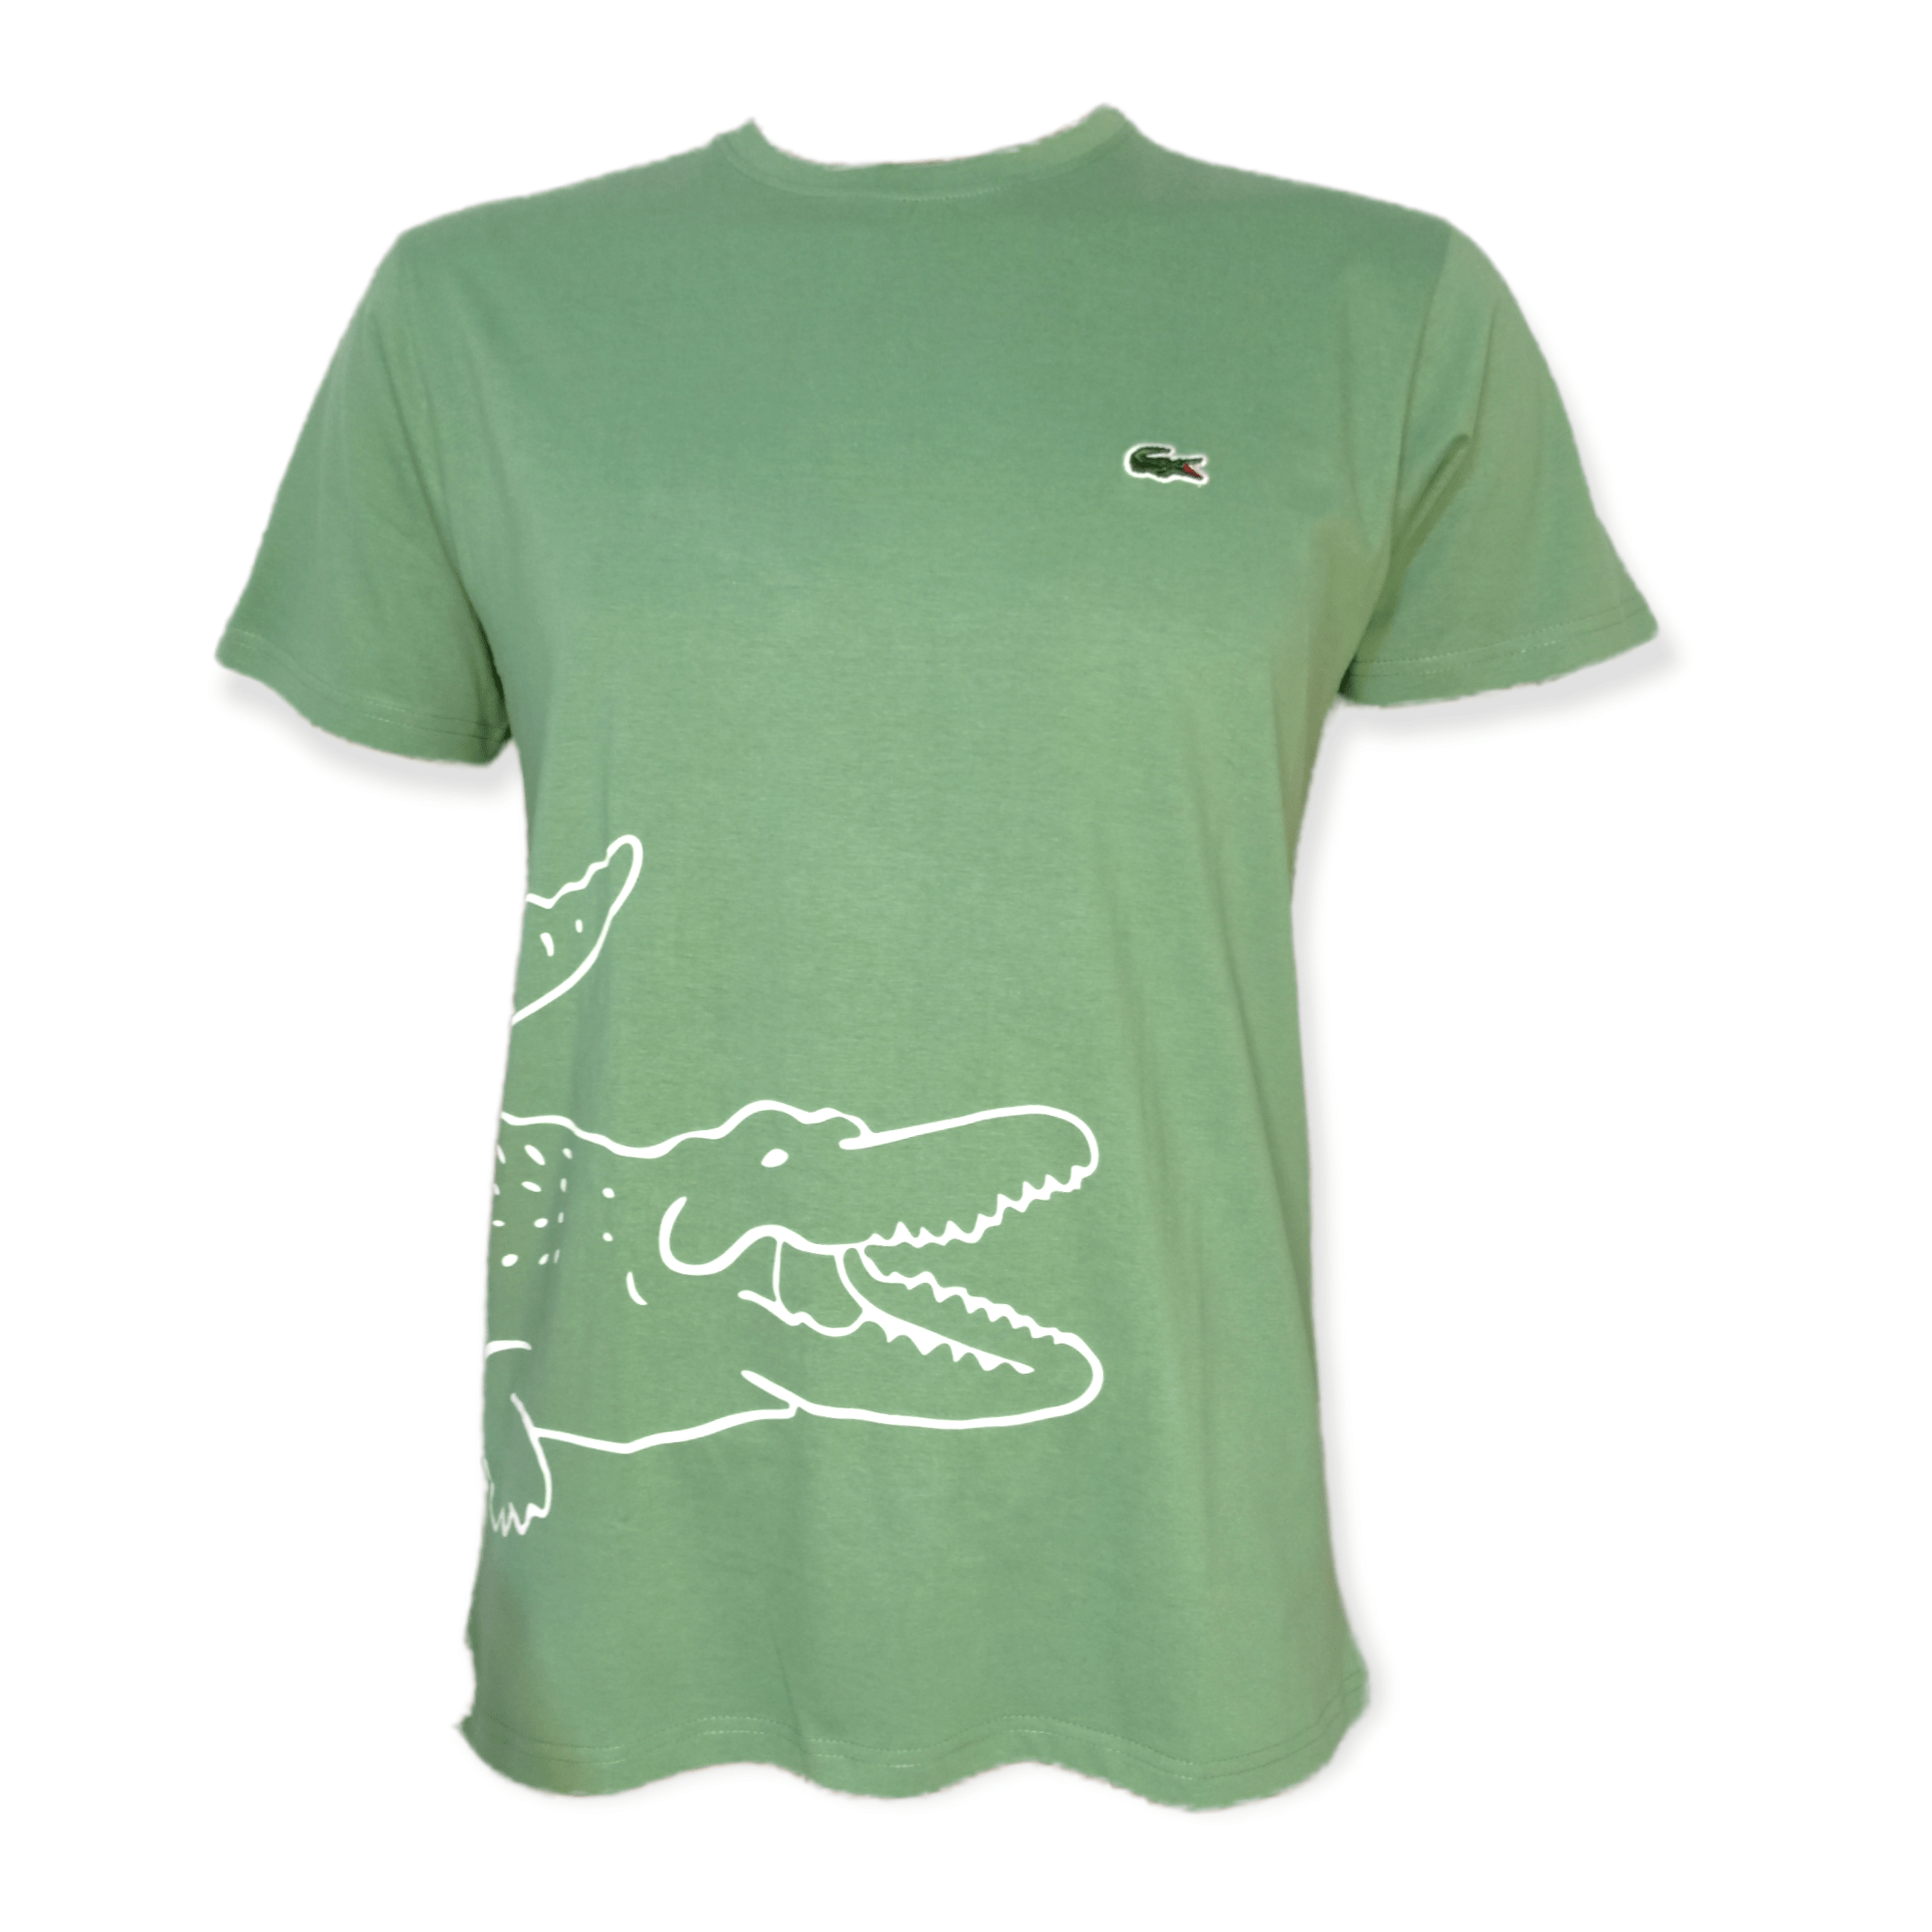 ElOutlet - Men Summer Men T-Shirt Men Slim-Fit Tshirt (Big C) - Green